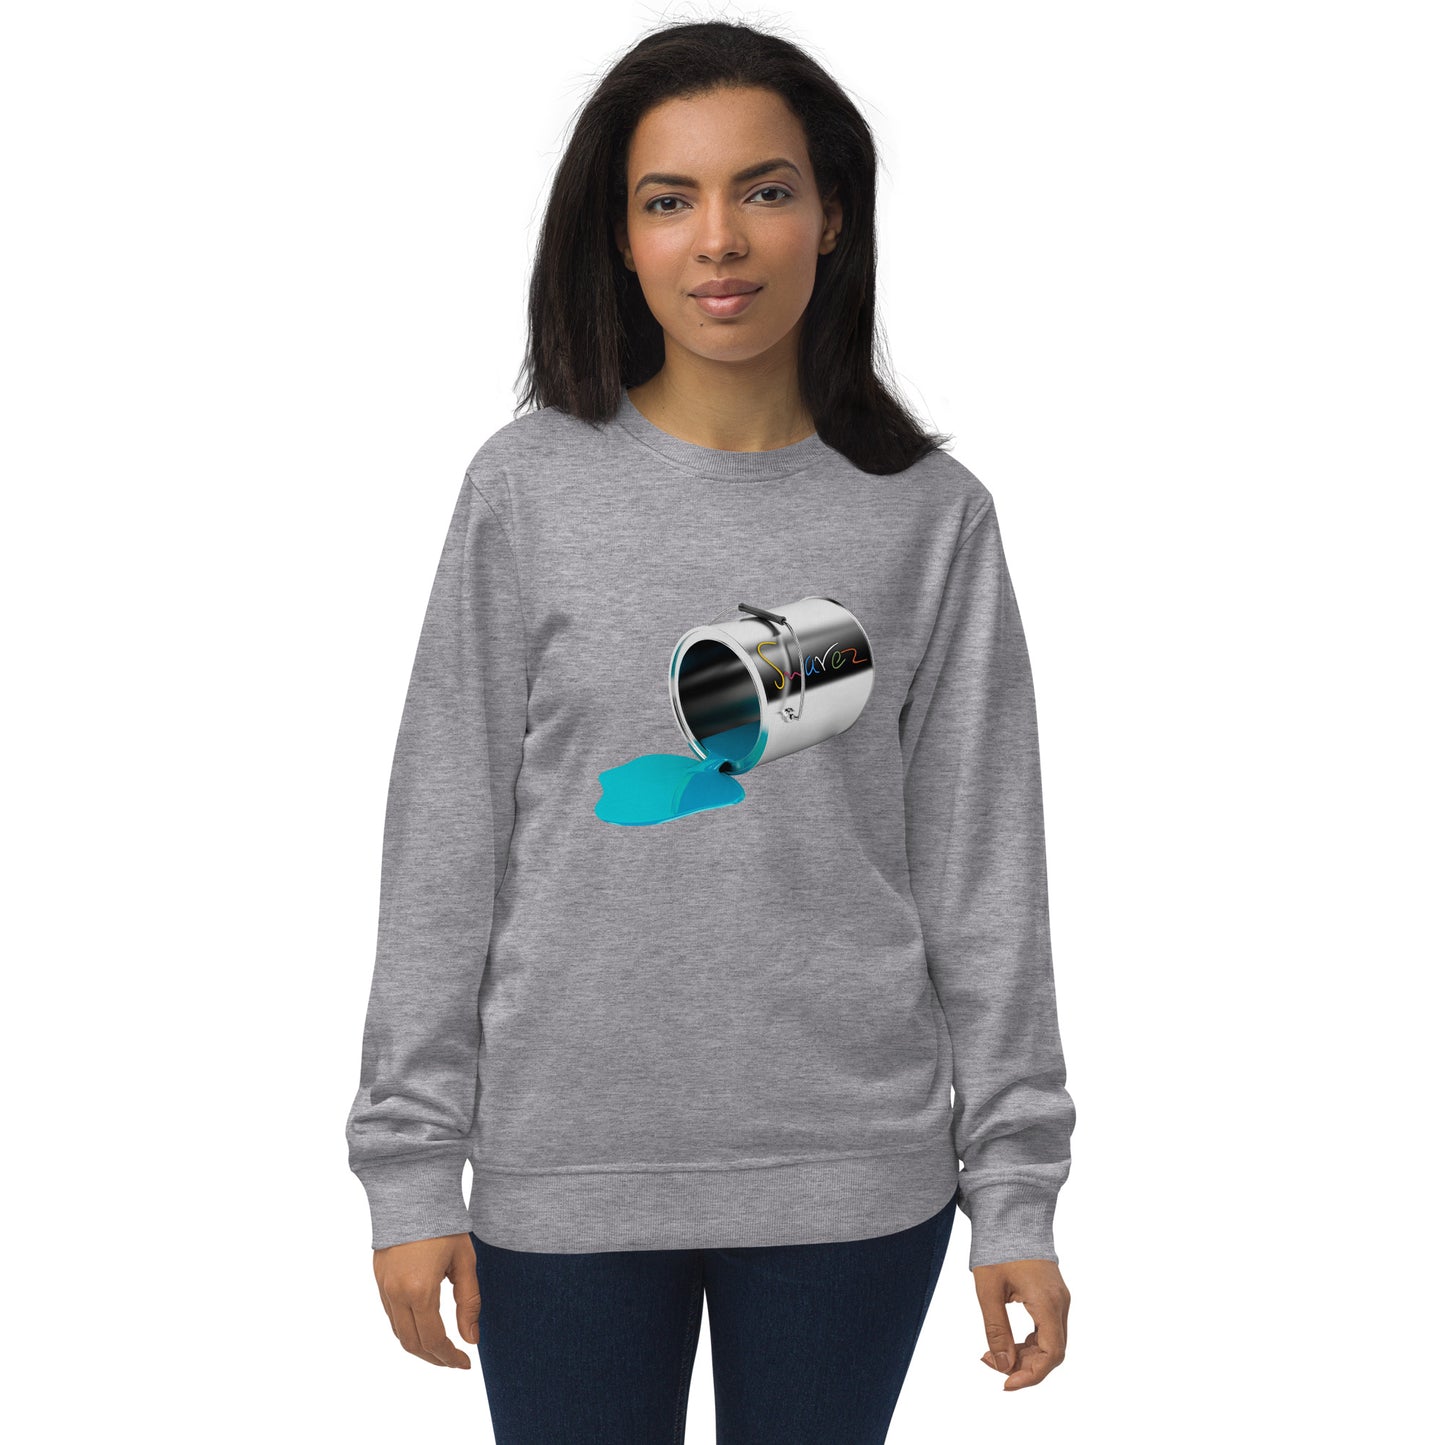 Unisex-Sweatshirt aus Bio-Baumwolle – Design mit verschütteter Farbe